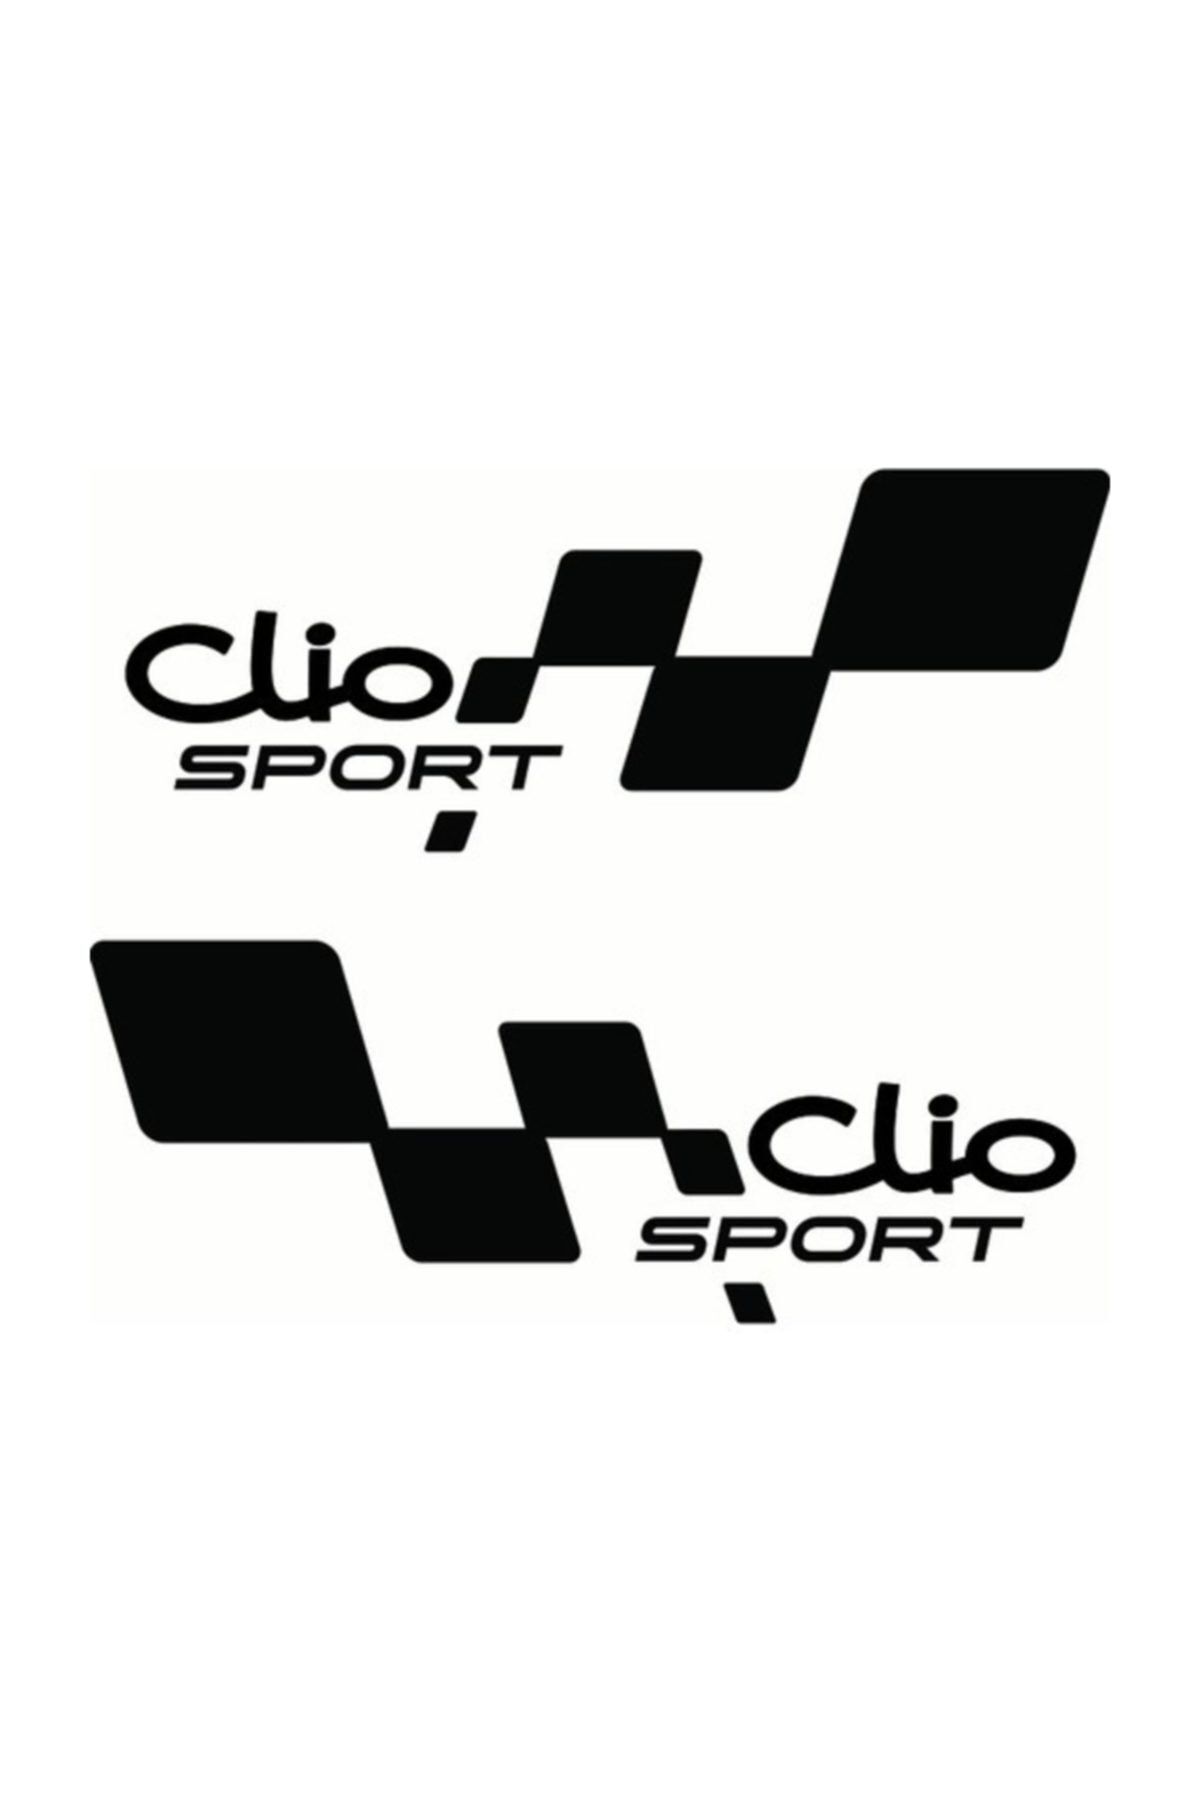 TSC Clio Yan Kapı Sport 30 Cm Sticker Araba Stickerı Yapıştırma 30cm